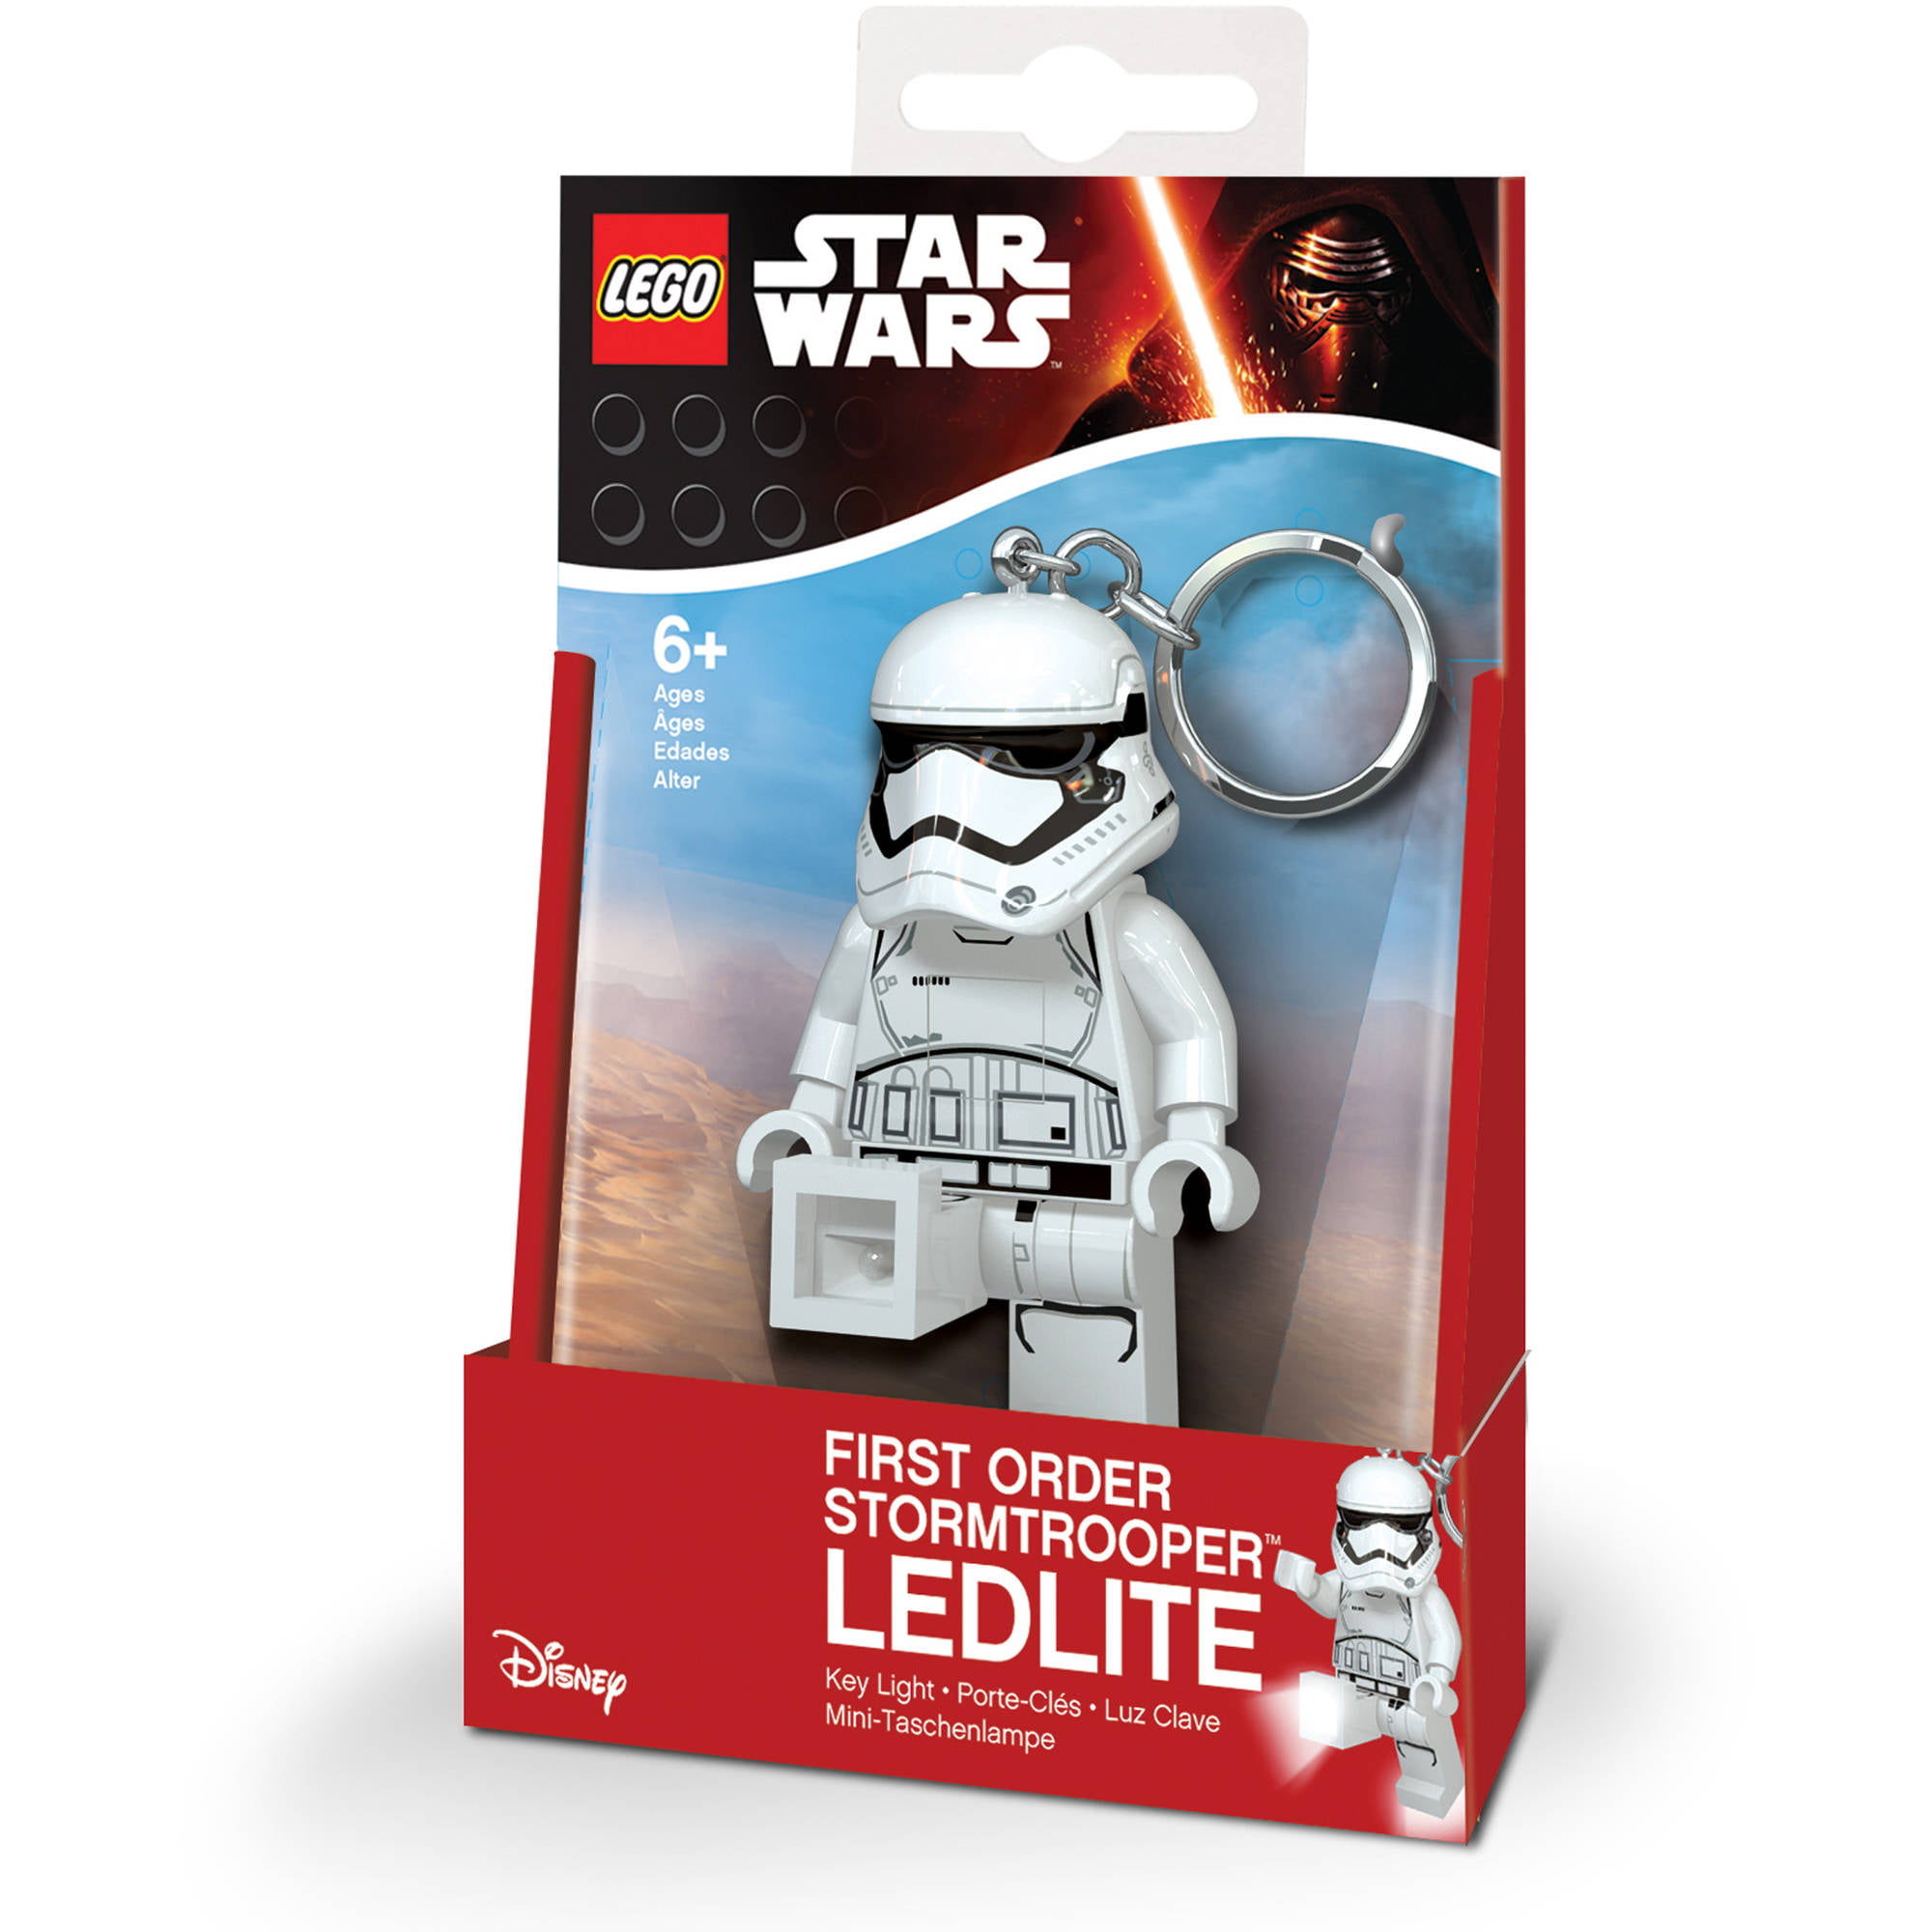 LEGO Star Wars Stormtrooper Key Light for sale online 